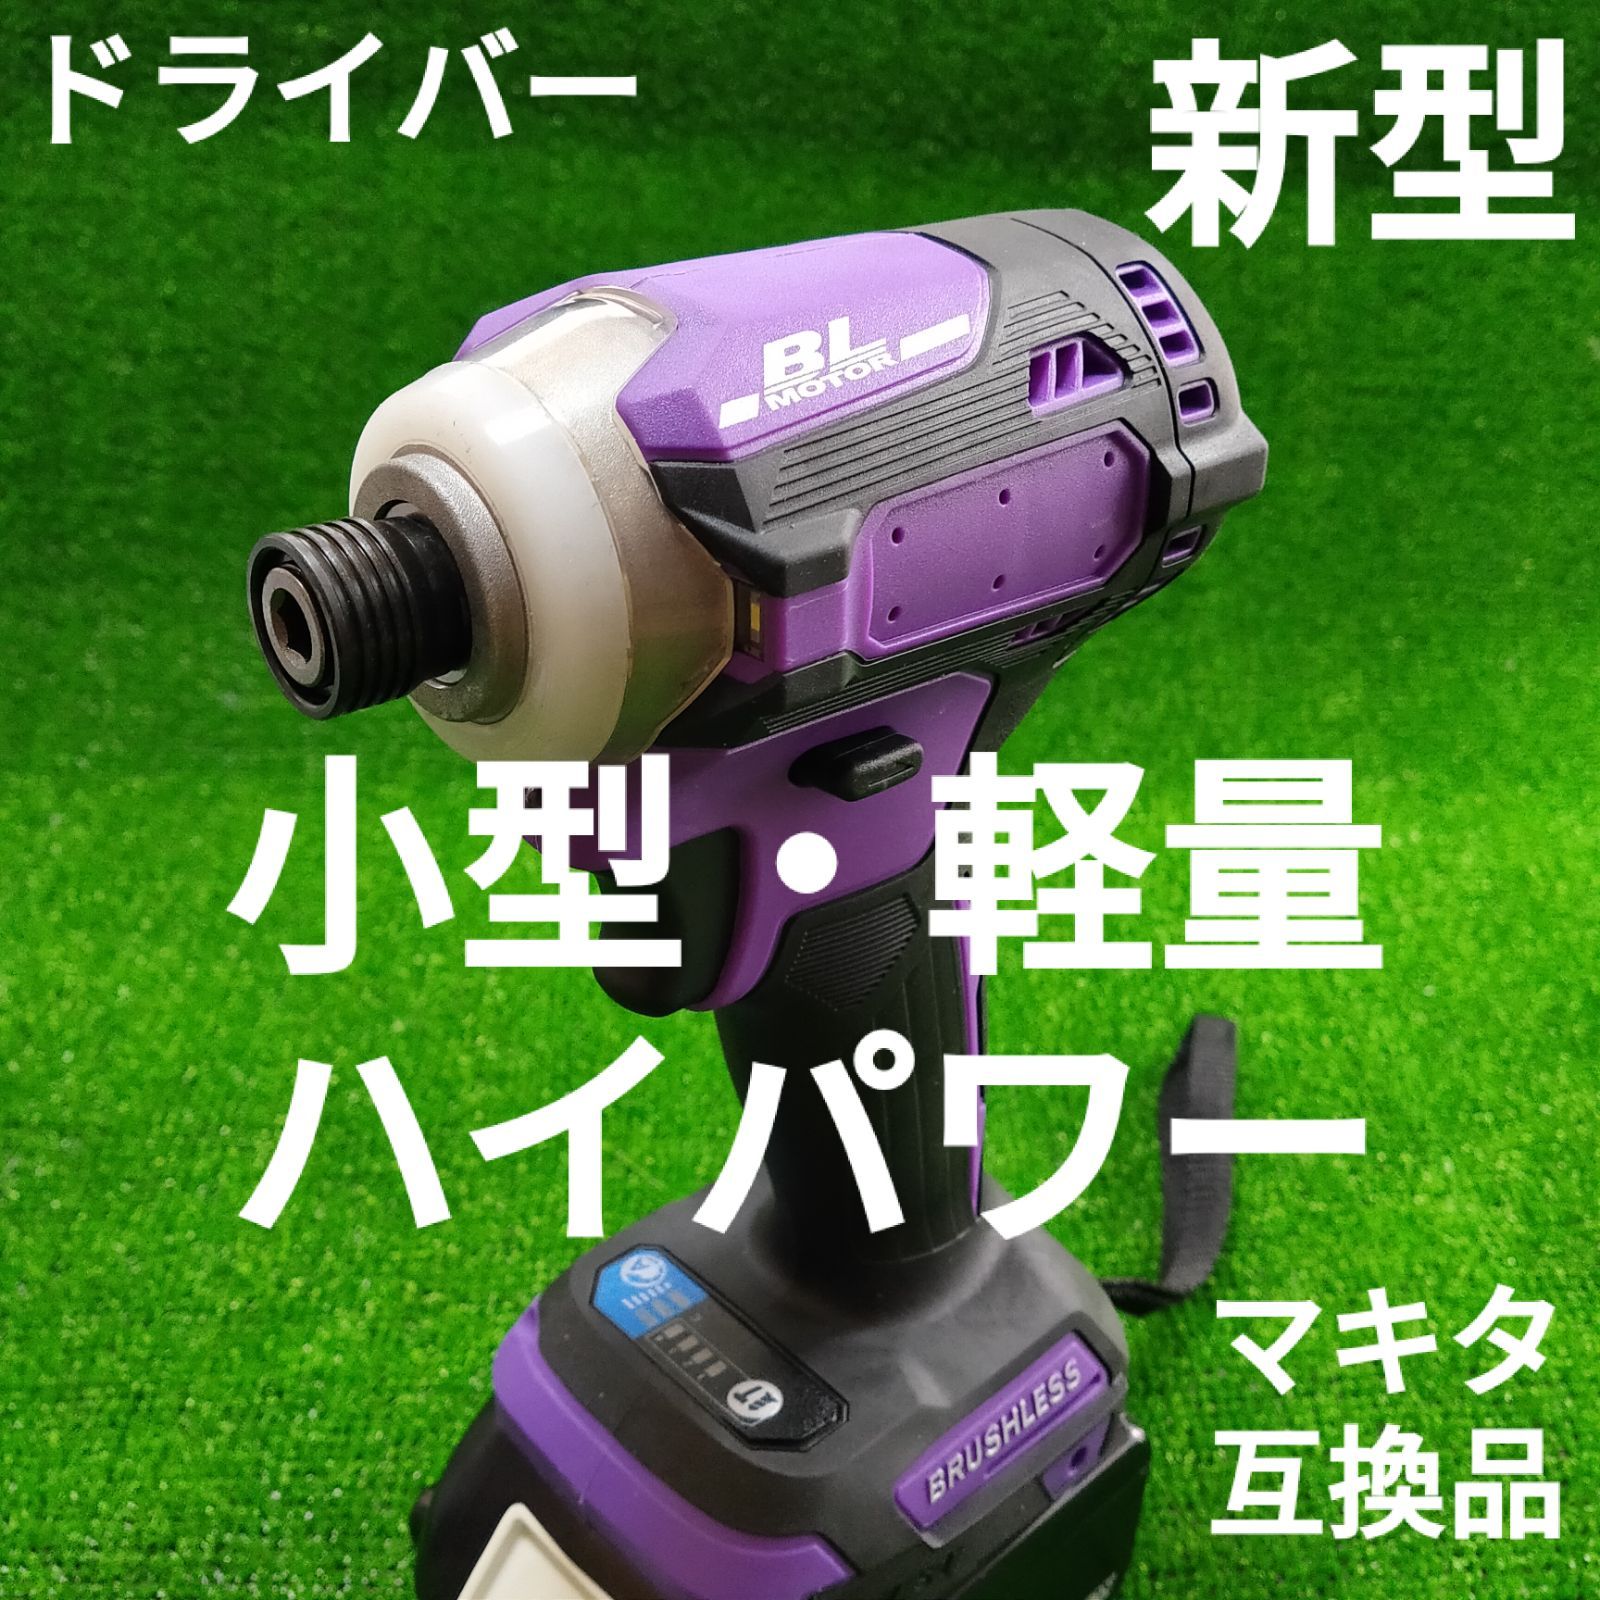 アウトレット送料無料】 マキタ インパクトドライバー TD173 限定色 紫